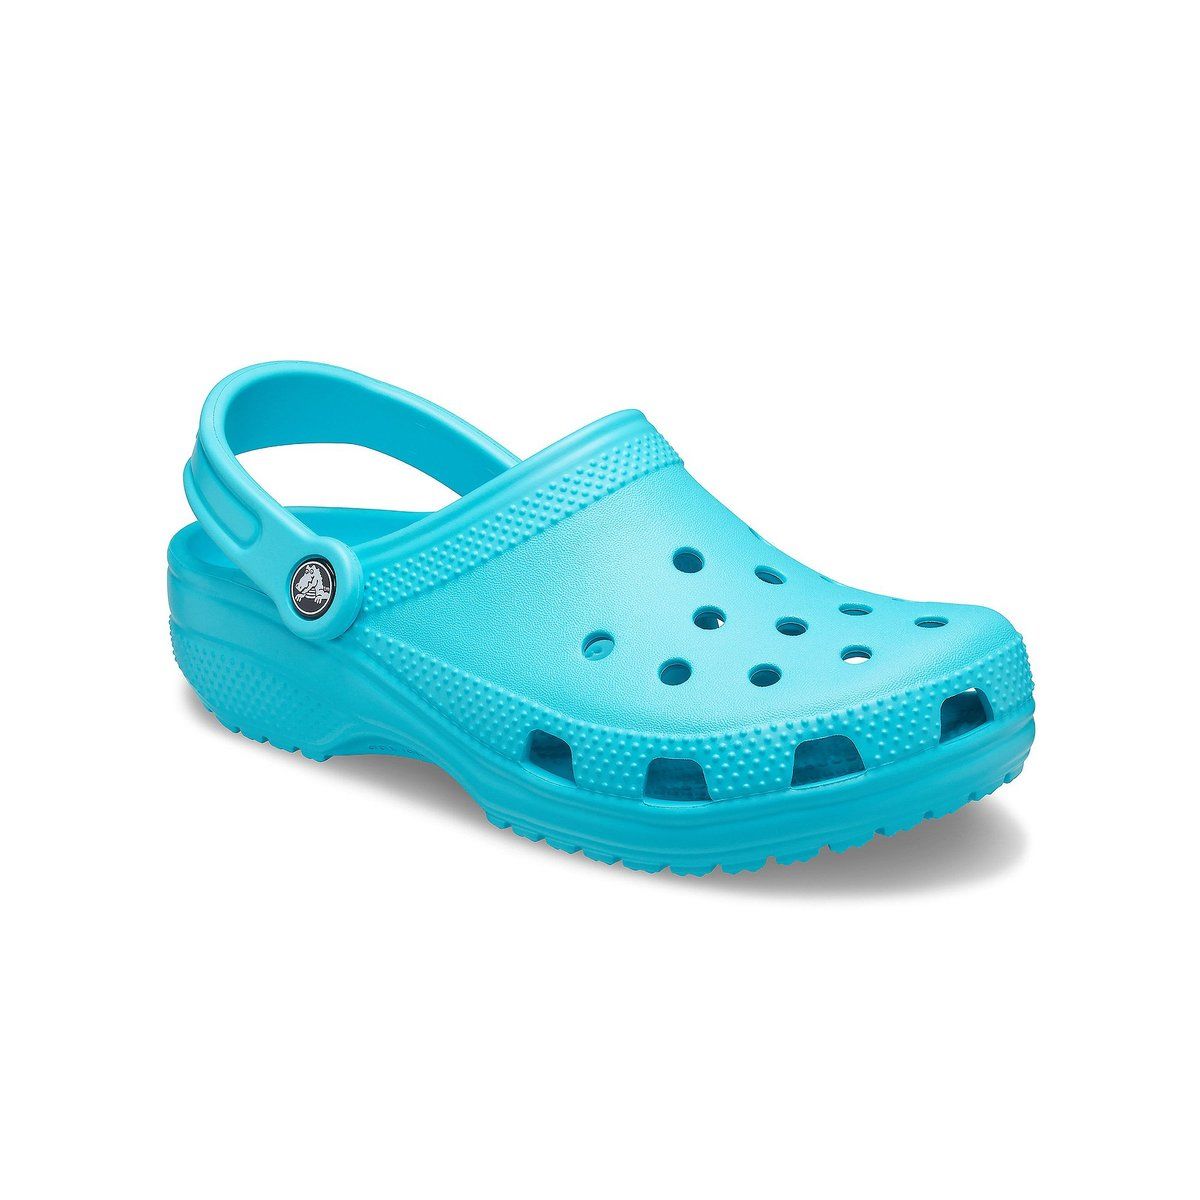 Crocs Classic 10001-4SL Aqua shoes